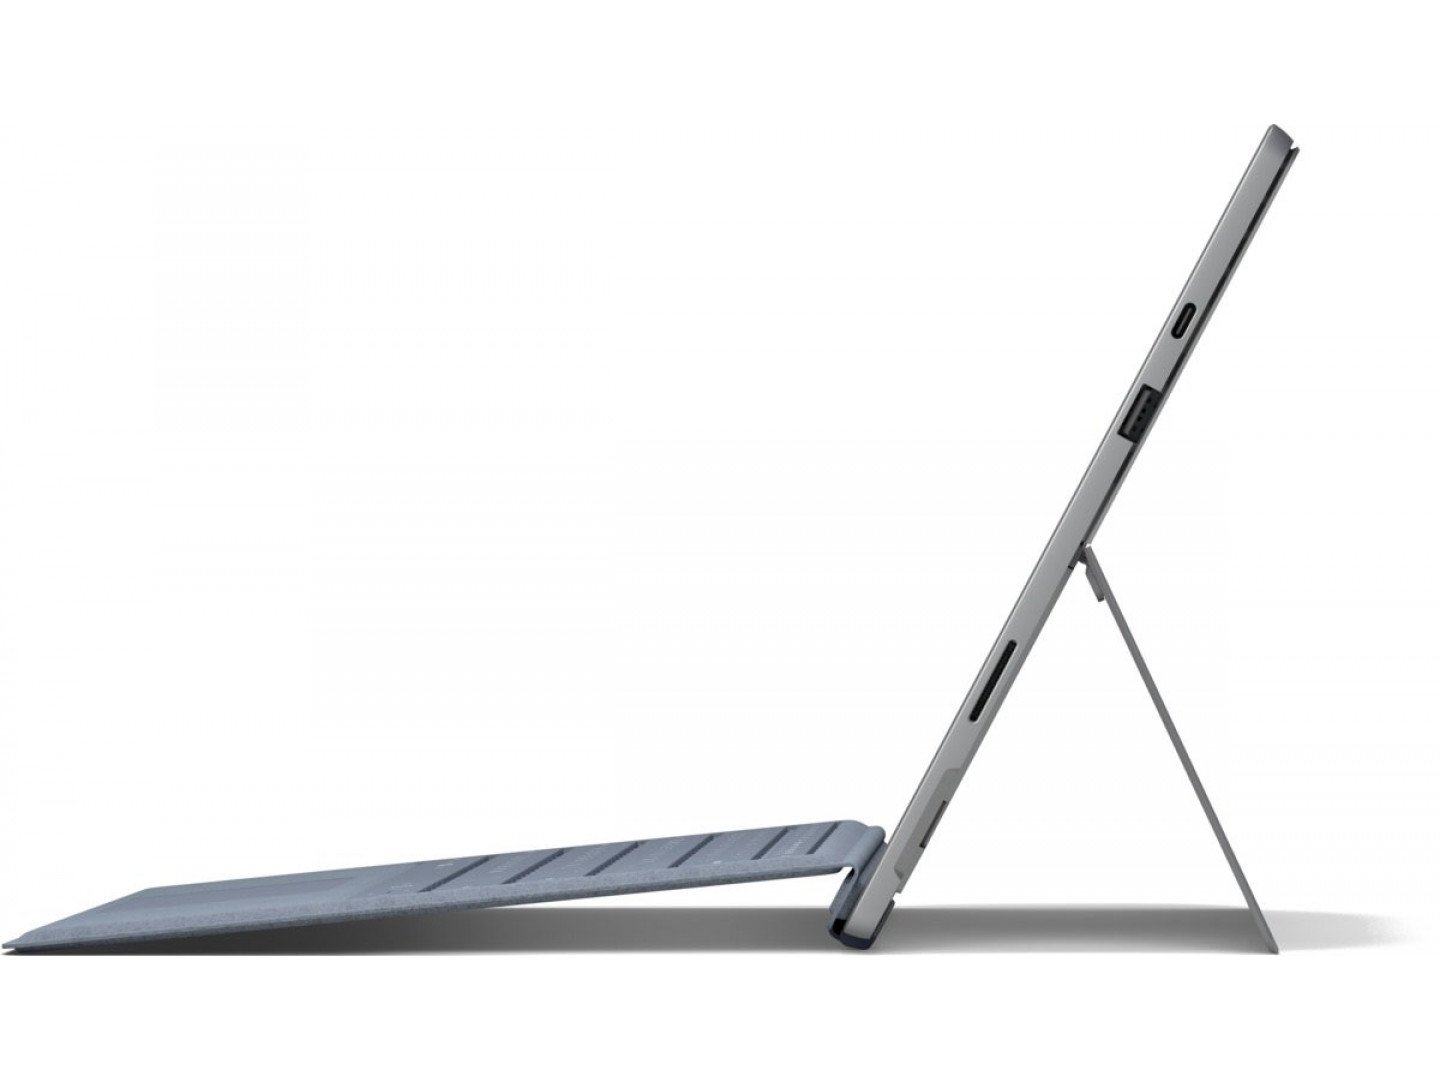 Купить Ноутбук Microsoft Surface Pro 7 Platinum (PUW-00003) - ITMag